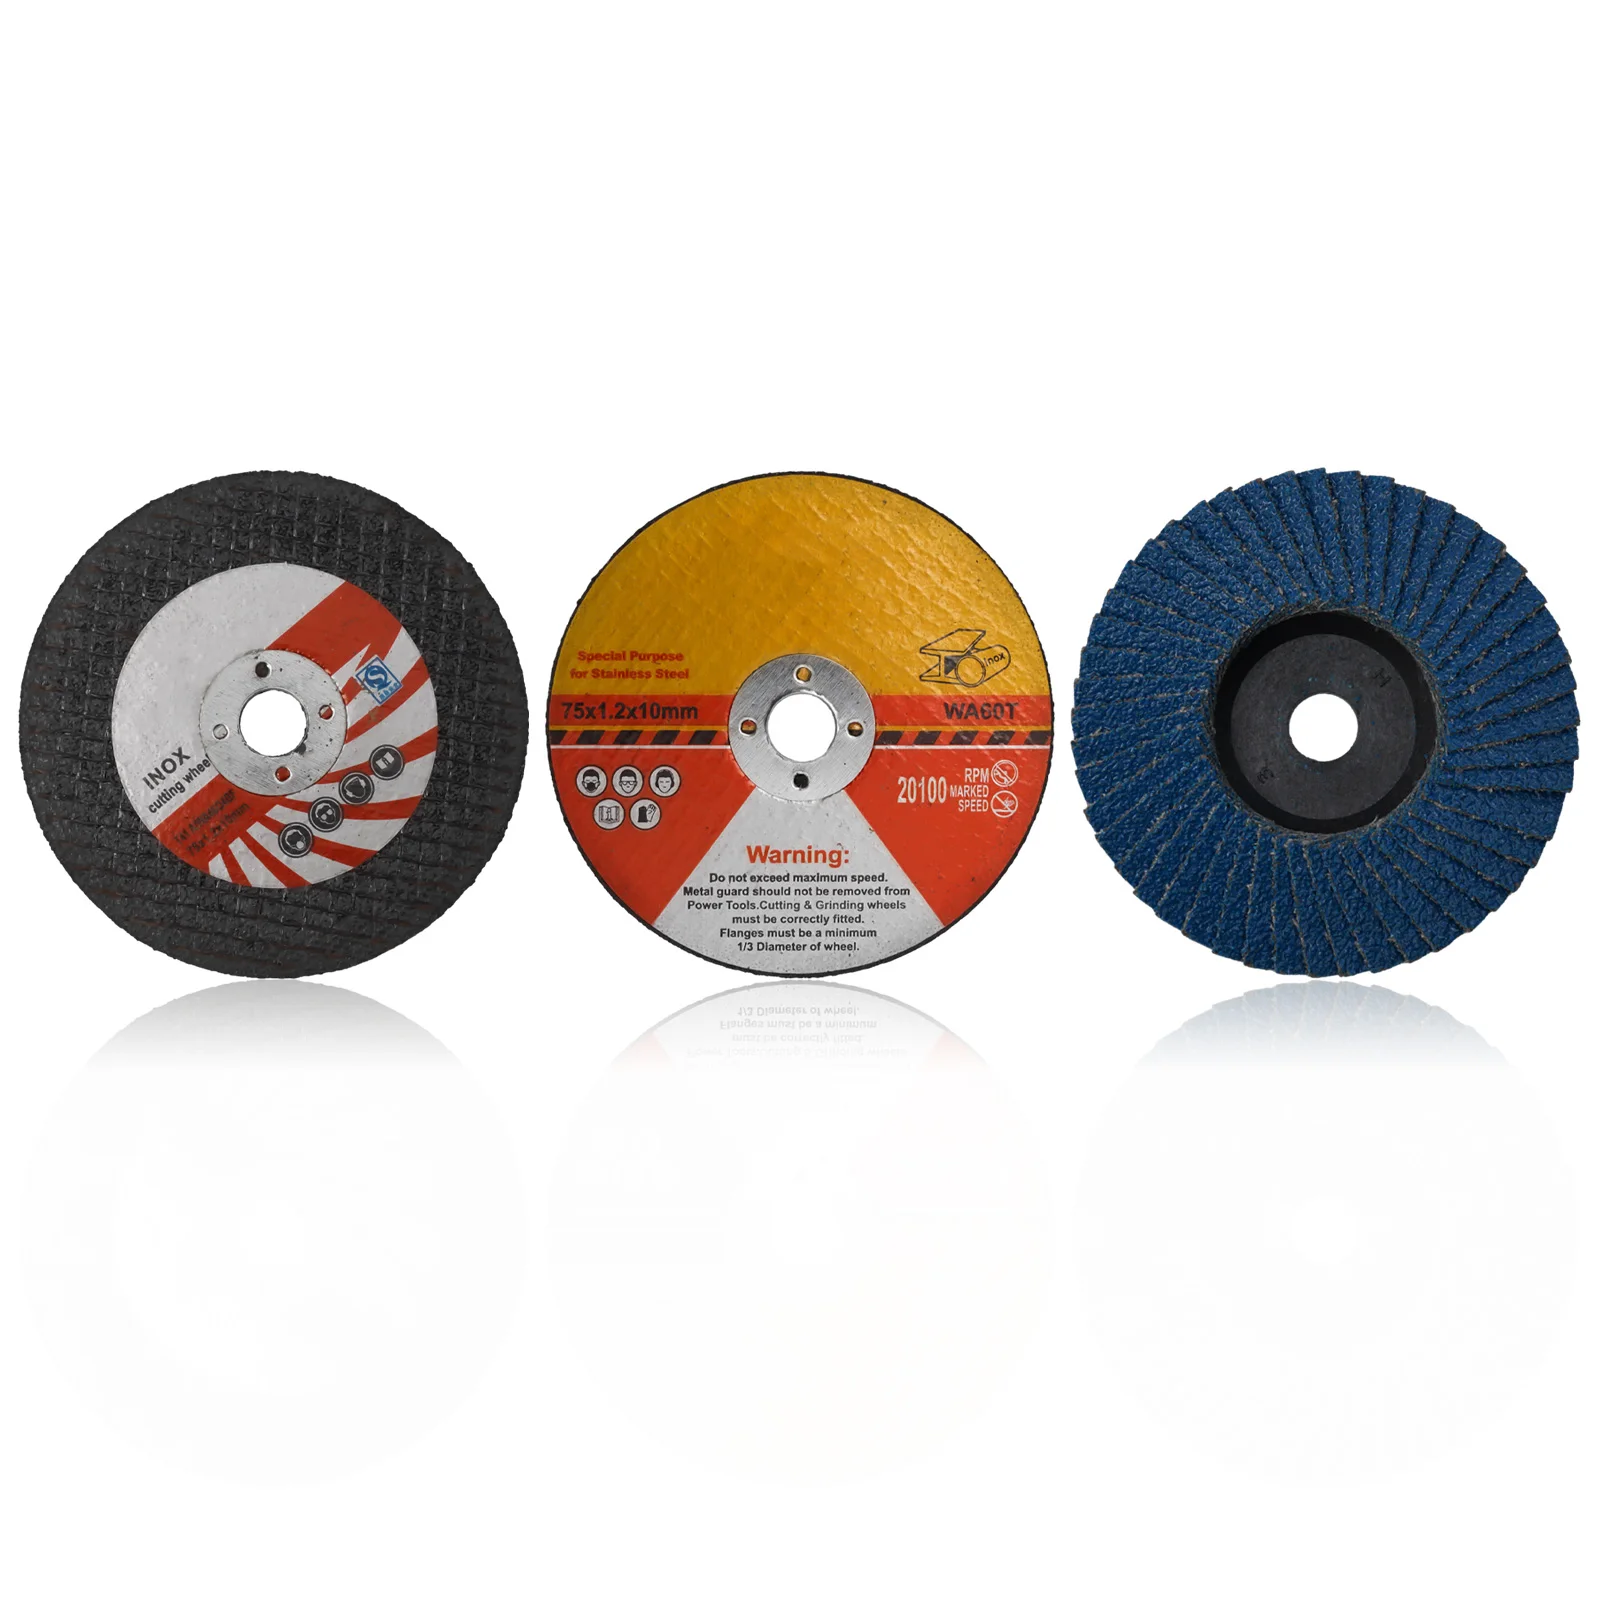 

Полимерные режущие диски для пилы, 15 шт./набор, 75 мм, абразивные диски для угловой шлифовальной машины, шлифовальные круги, электроинструменты, высокое качество